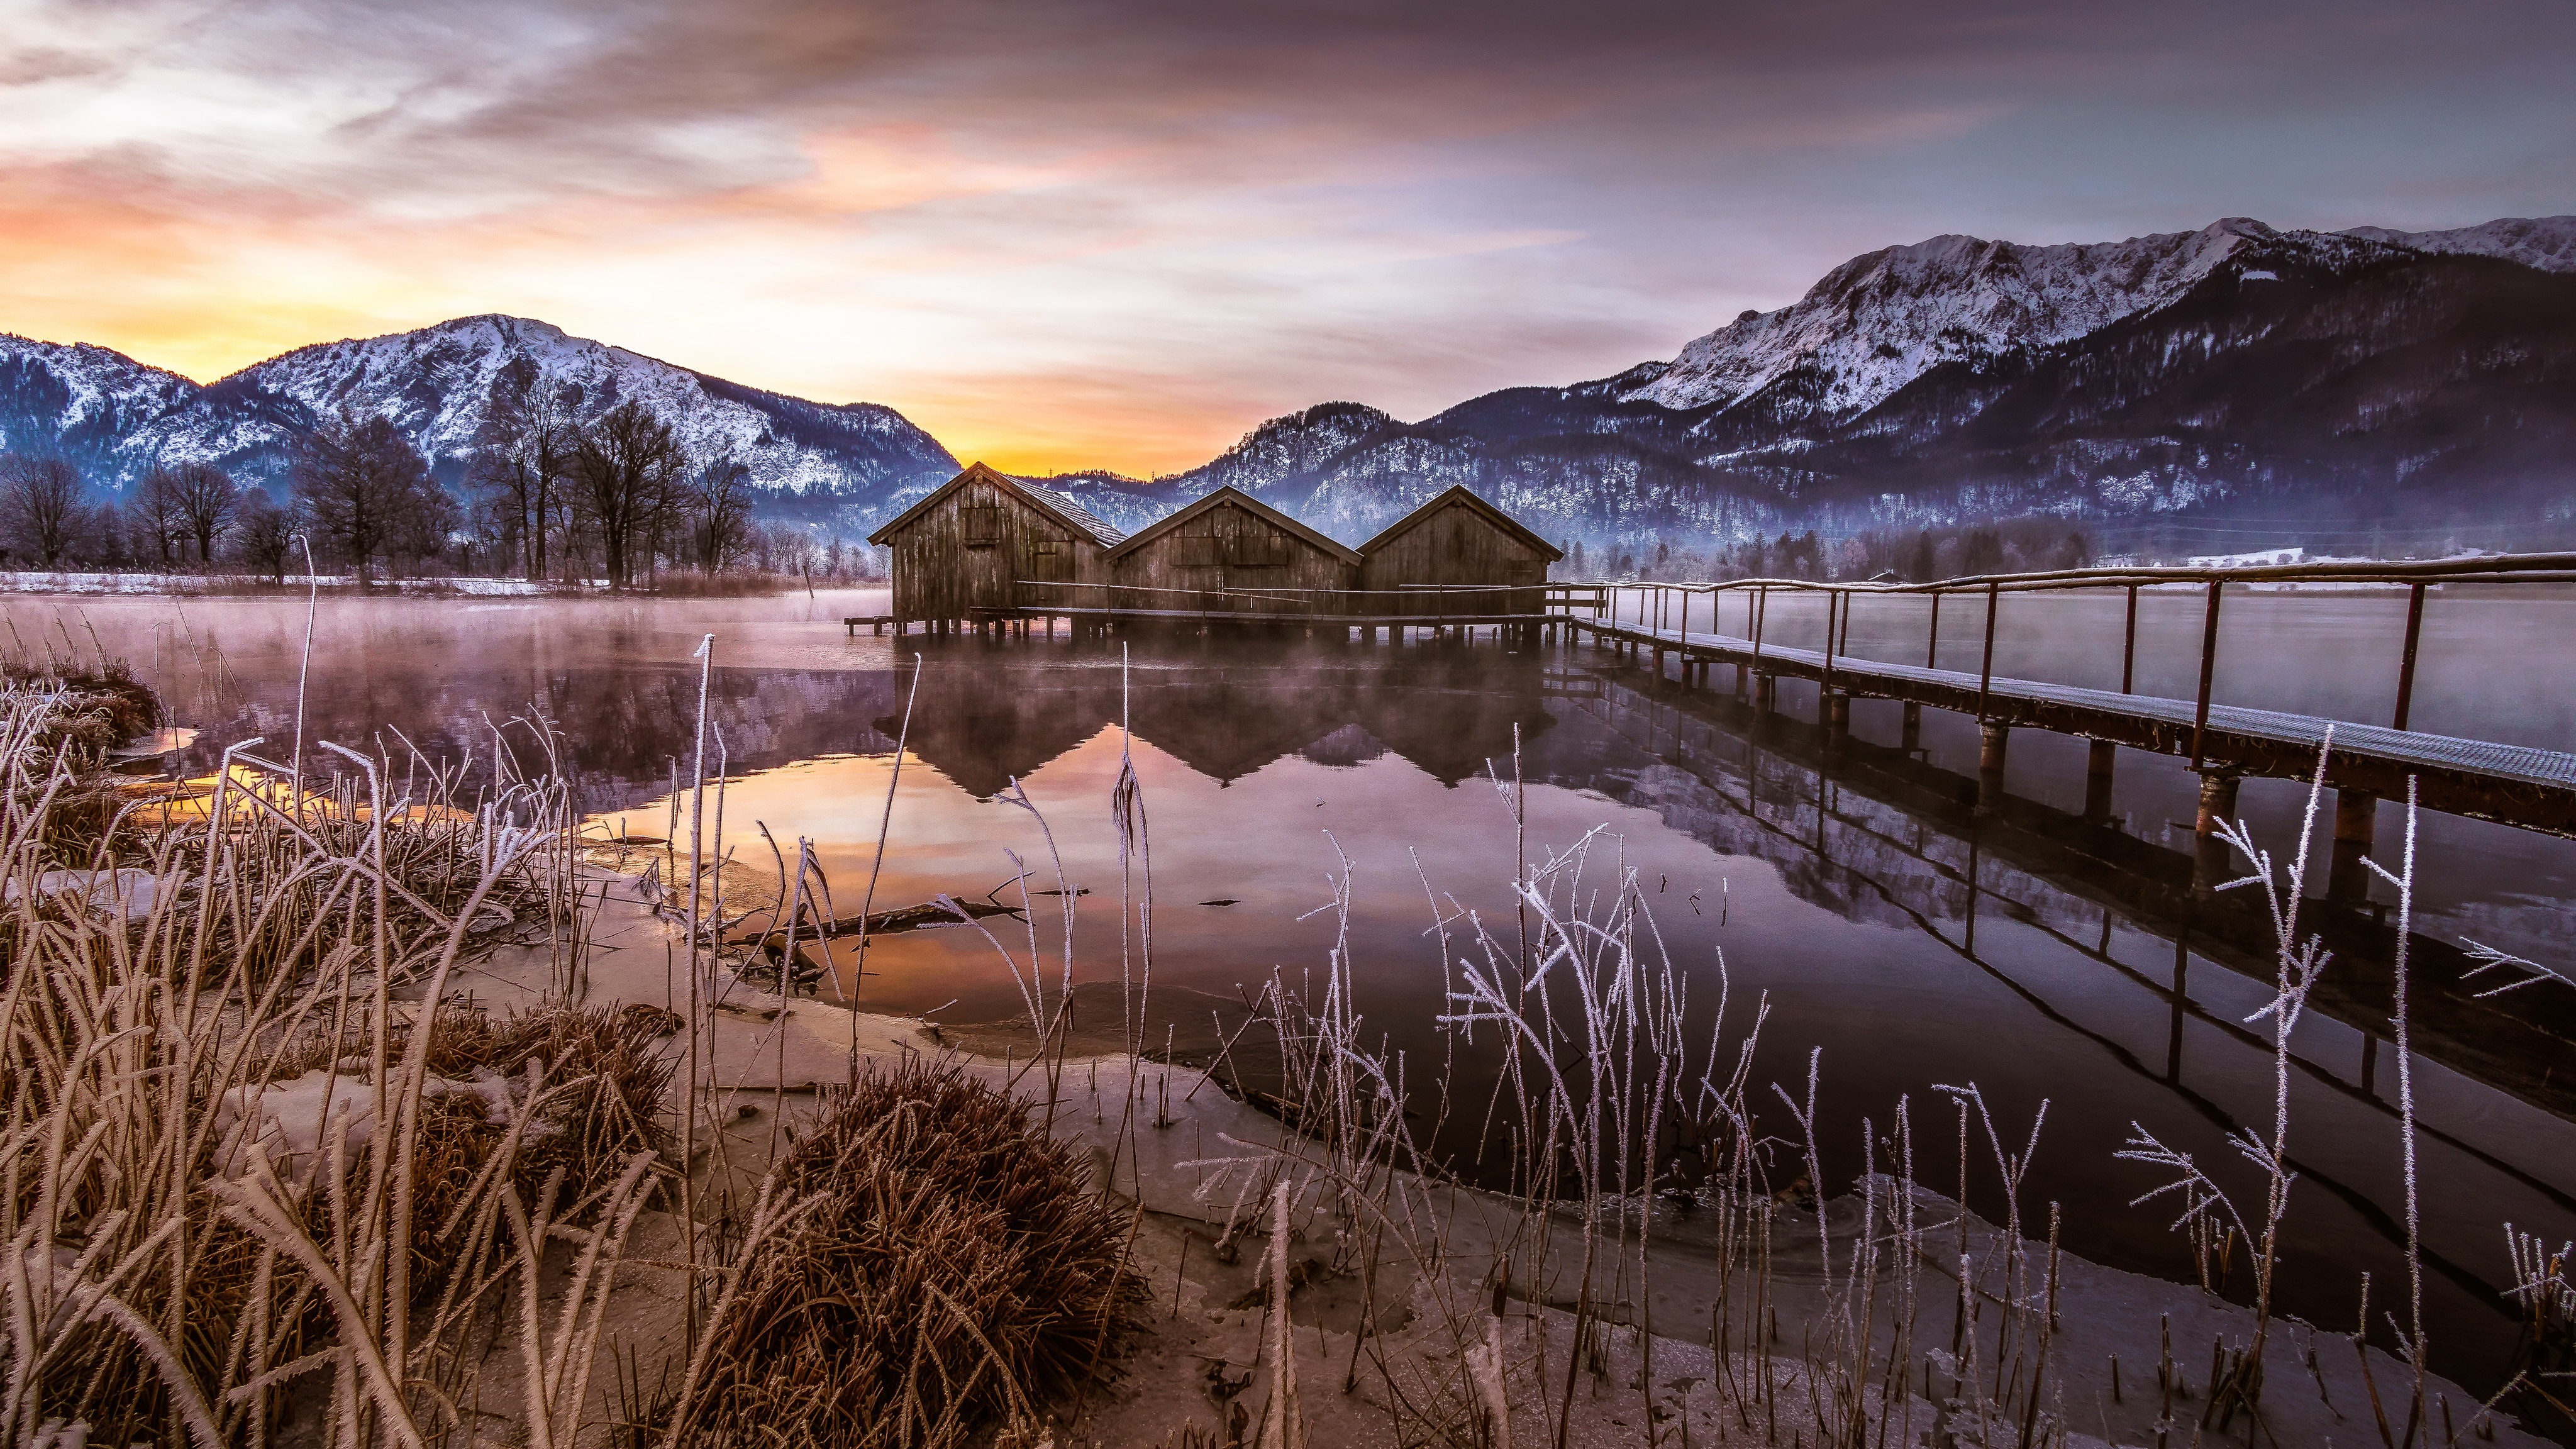 Download mobile wallpaper Winter, Mountain, Lake, Pier, Bavaria, Man Made for free.